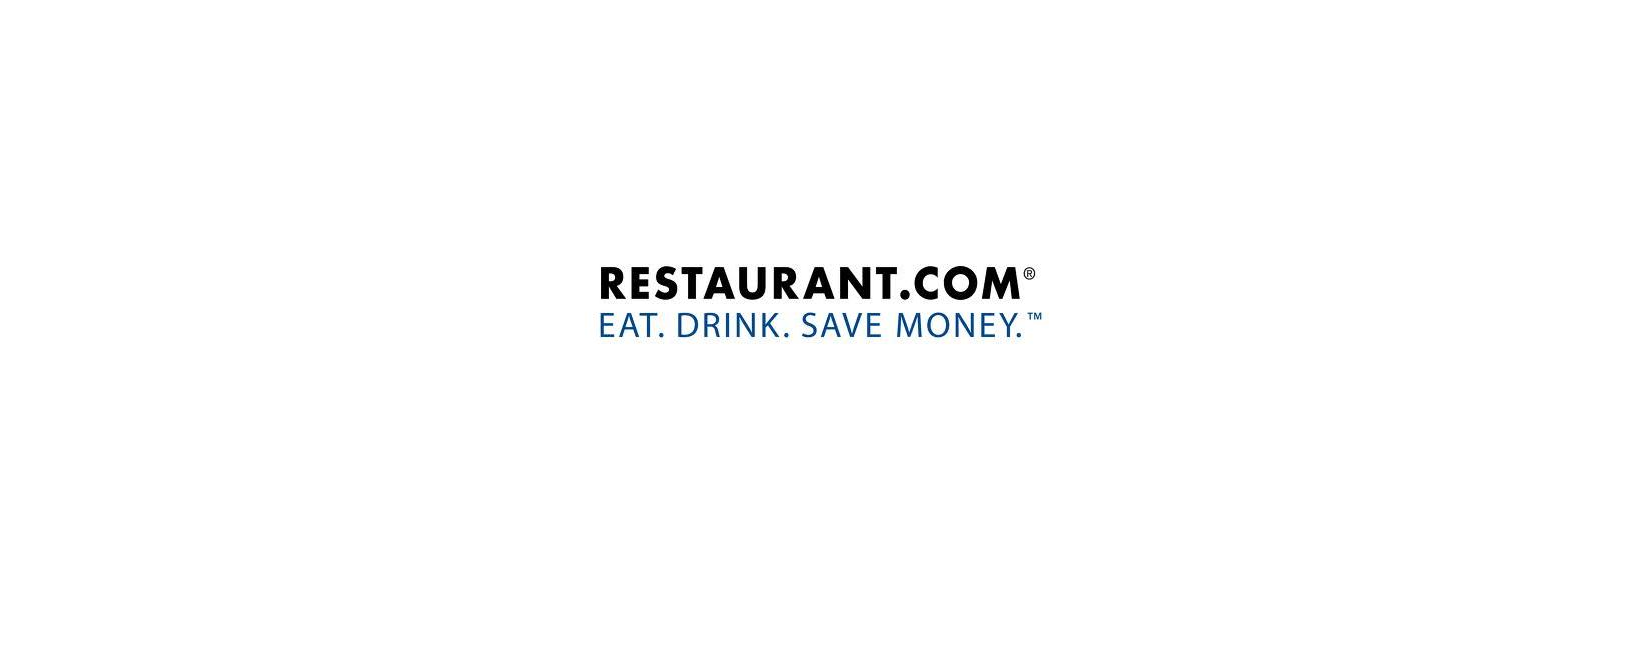 Restaurant.com Discount Code 2022